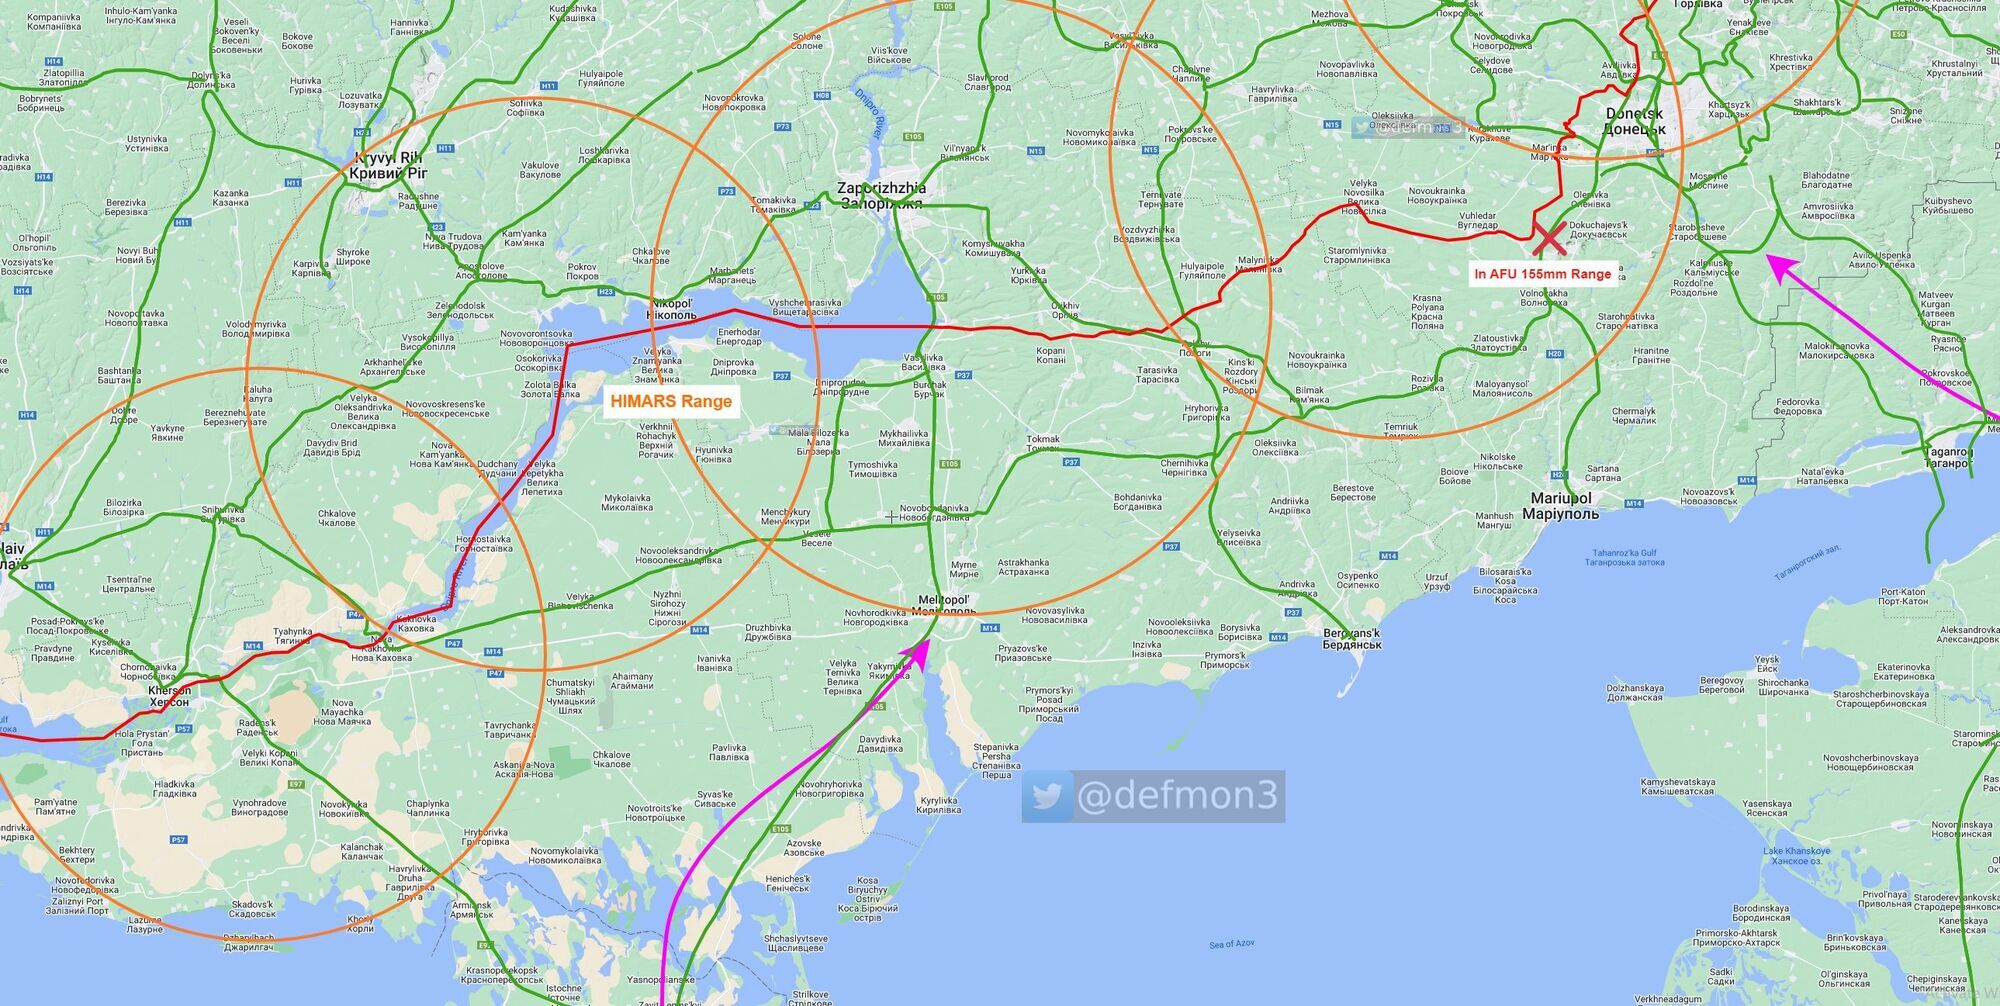 Залізничний ''сухопутний коридор'' з Донбасу на південь у радіусі ураження з позицій ЗСУ